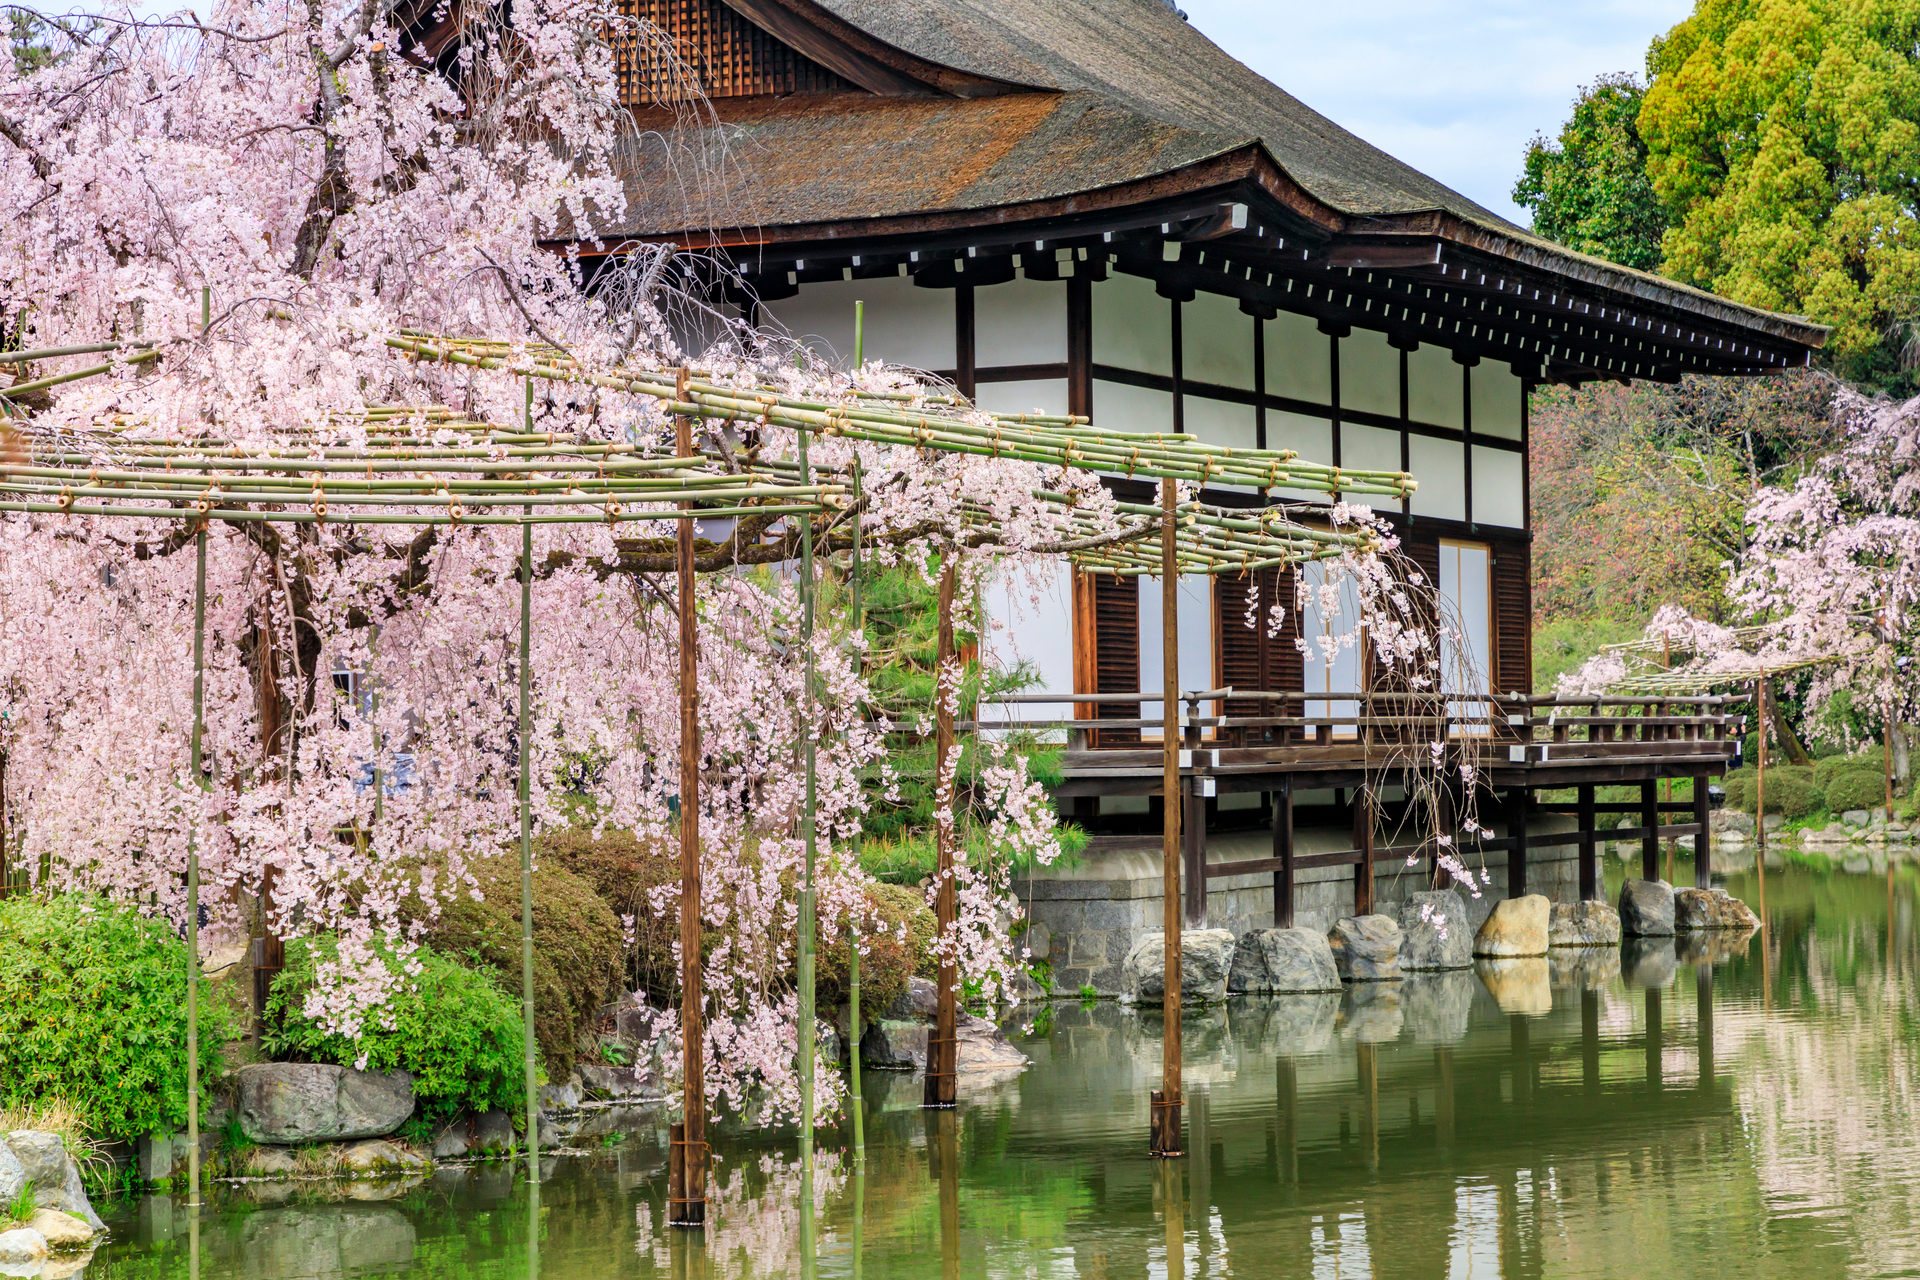 春の京都のデートスポットといえばここ 大事な二人のひとときを 春の京都で楽しみませんか Caedekyoto カエデ京都 紅葉と伝統美を引き継ぐバッグ